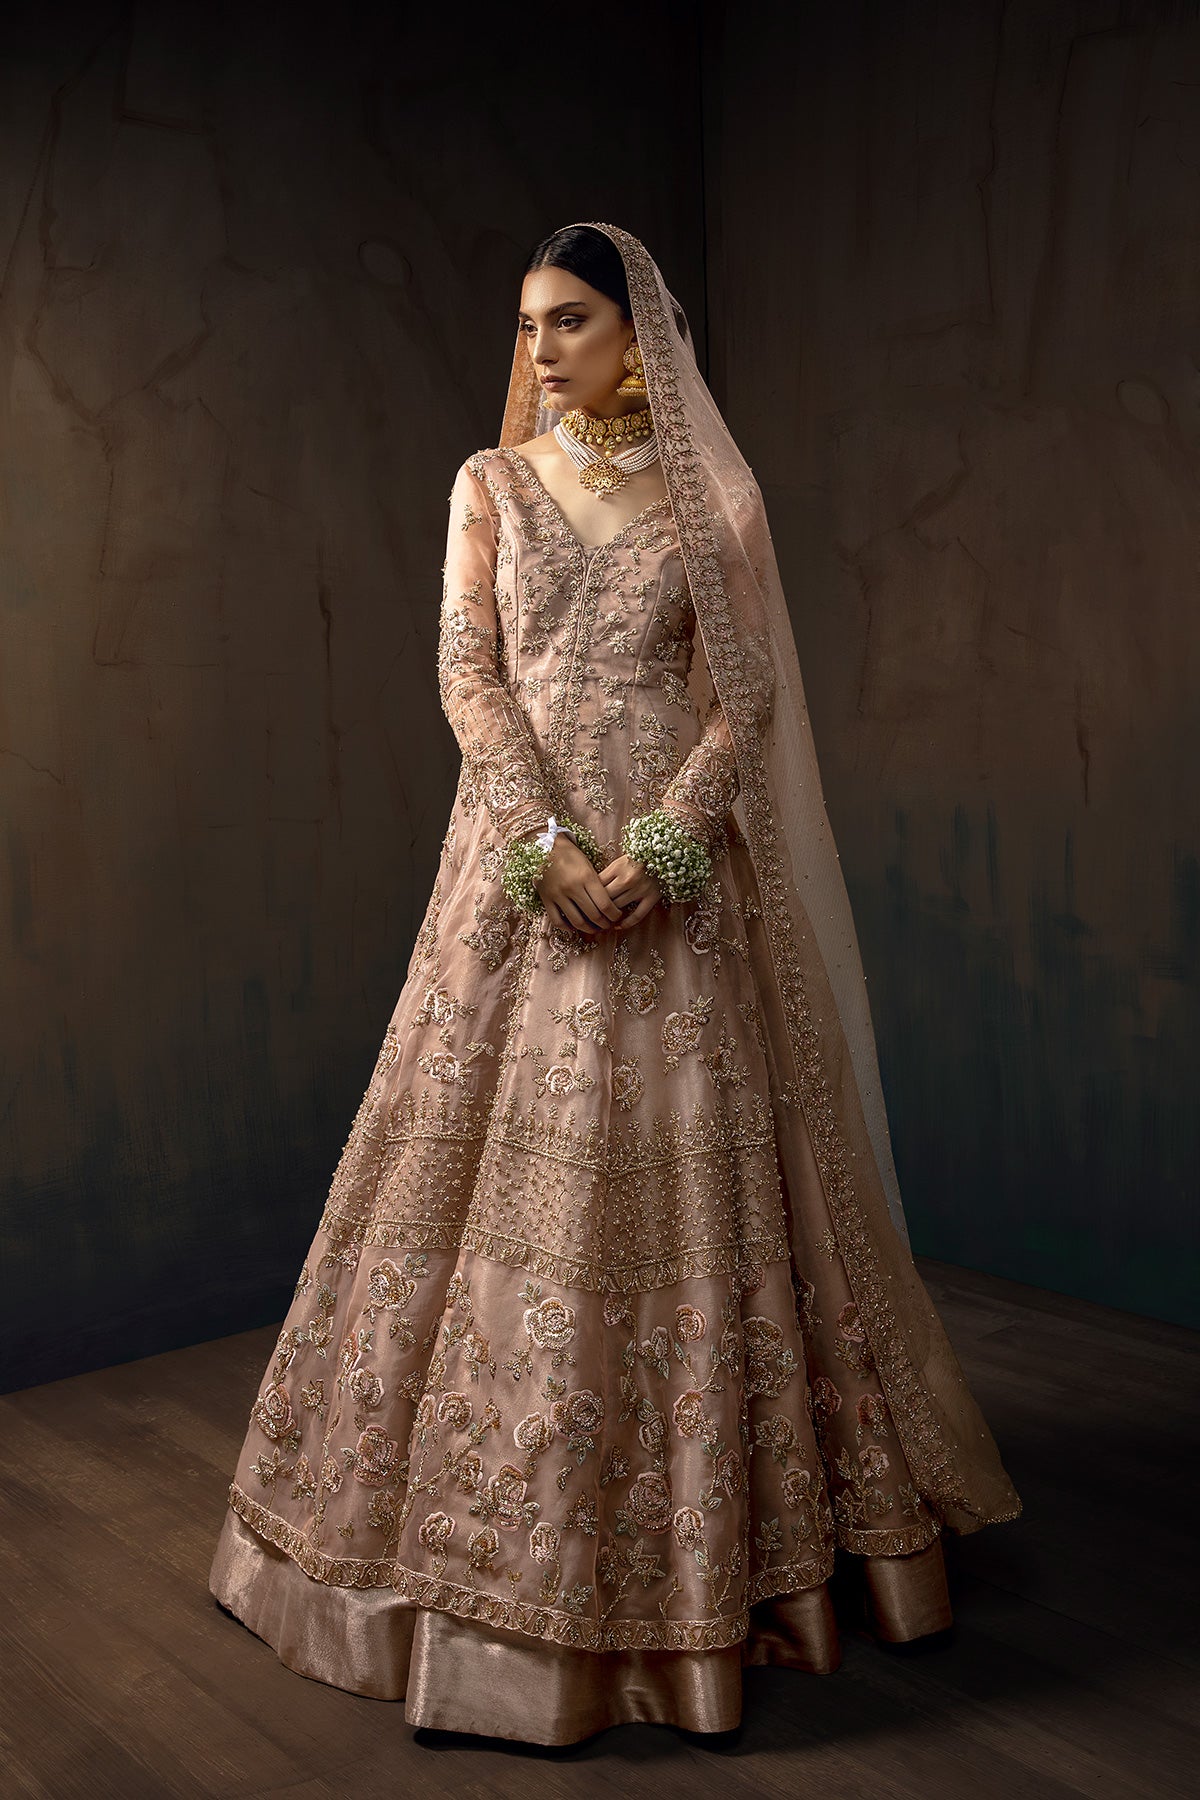 Chantilly Lace Wedding Dress | Ivory Cotton Lace Wedding Dress